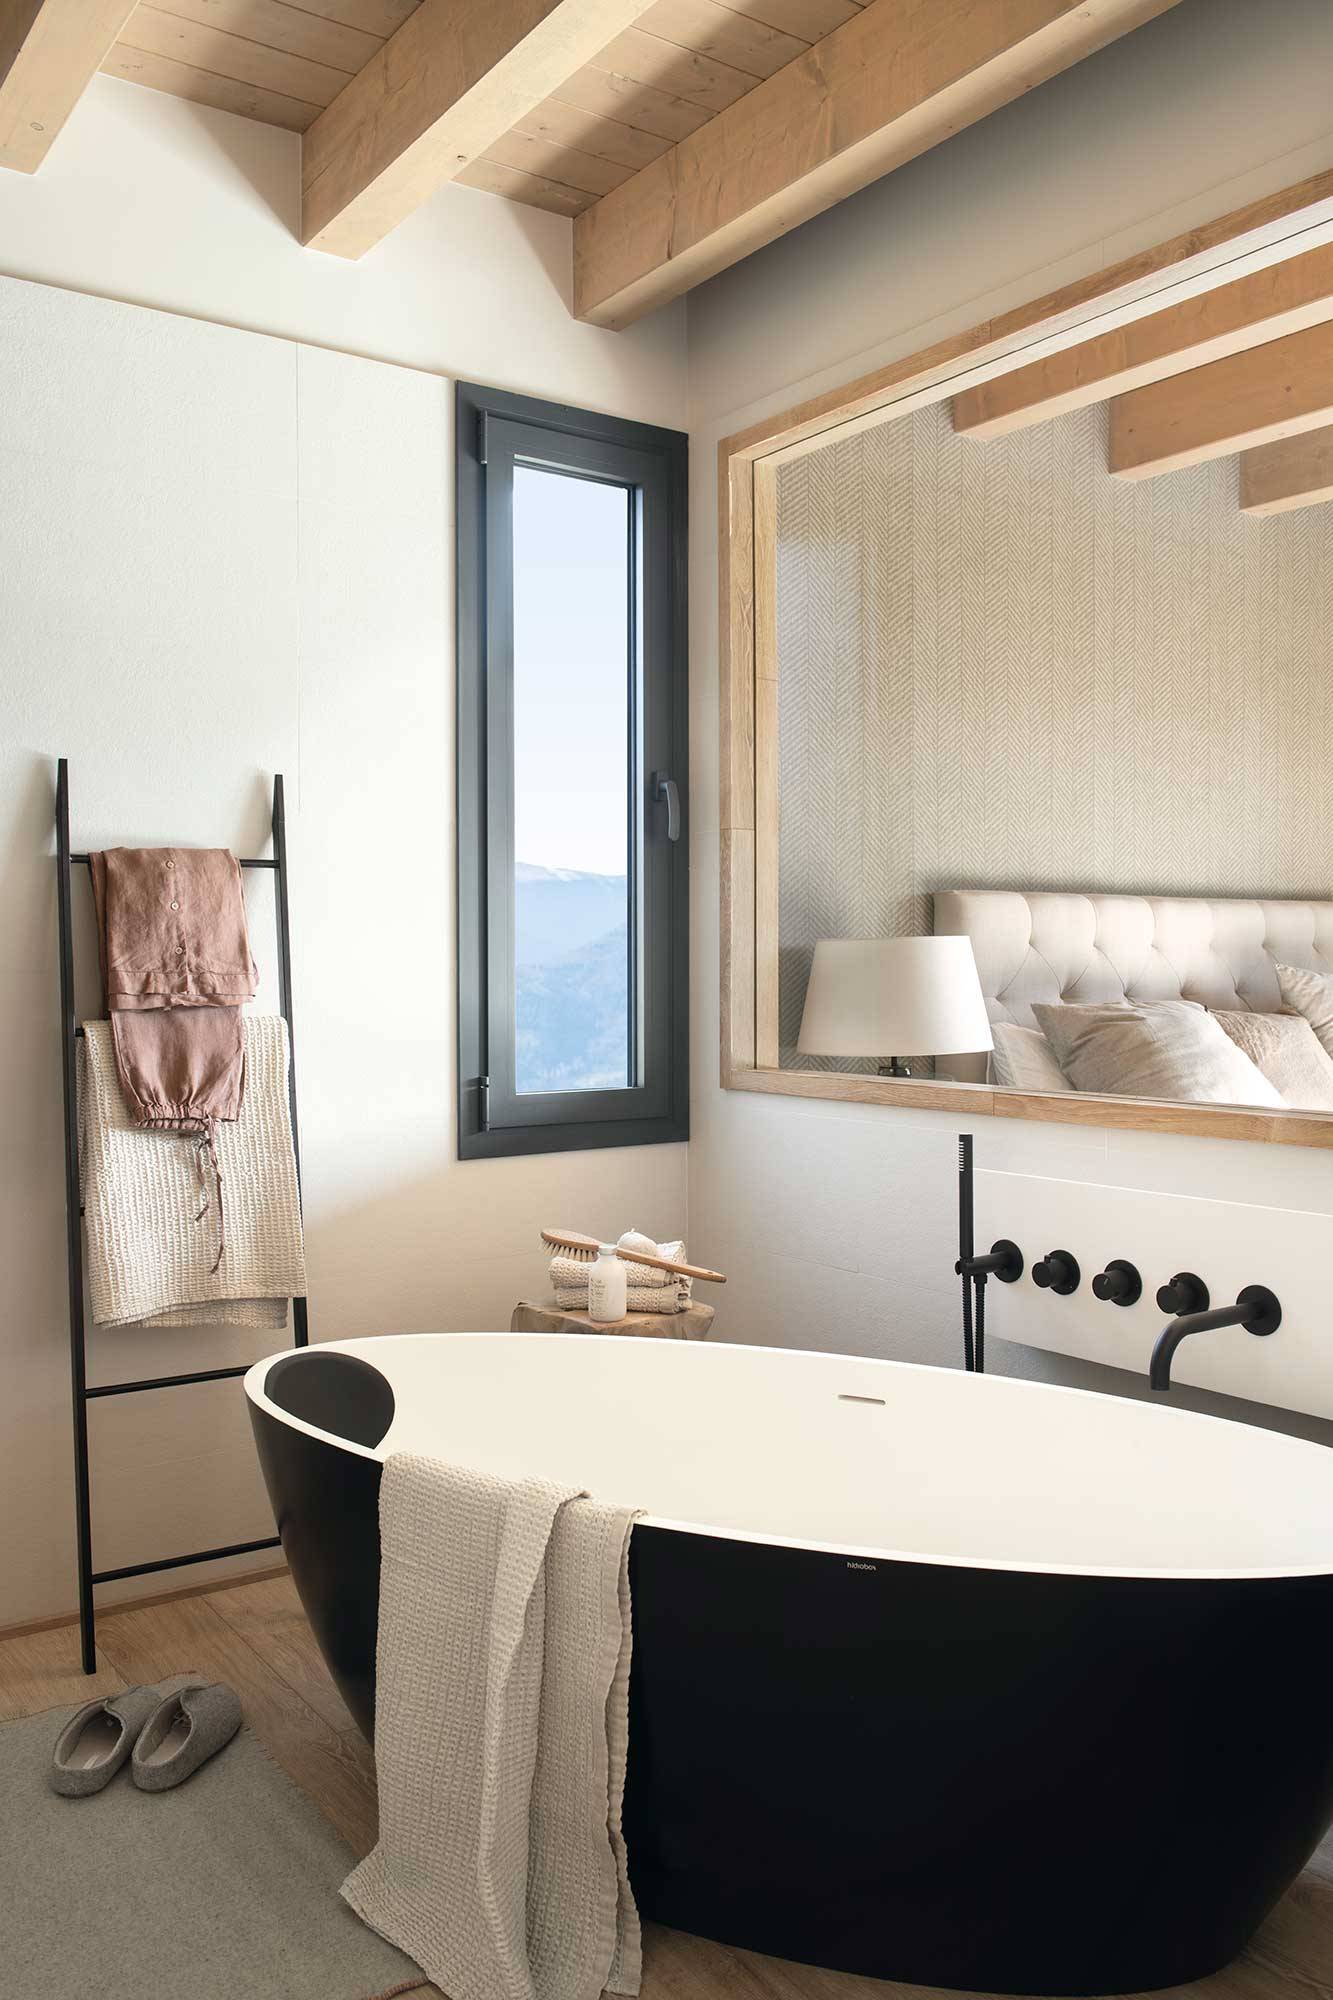 Baño rústico moderno con bañera exenta negra y ventana fija que comunica el baño con el dormitorio. 